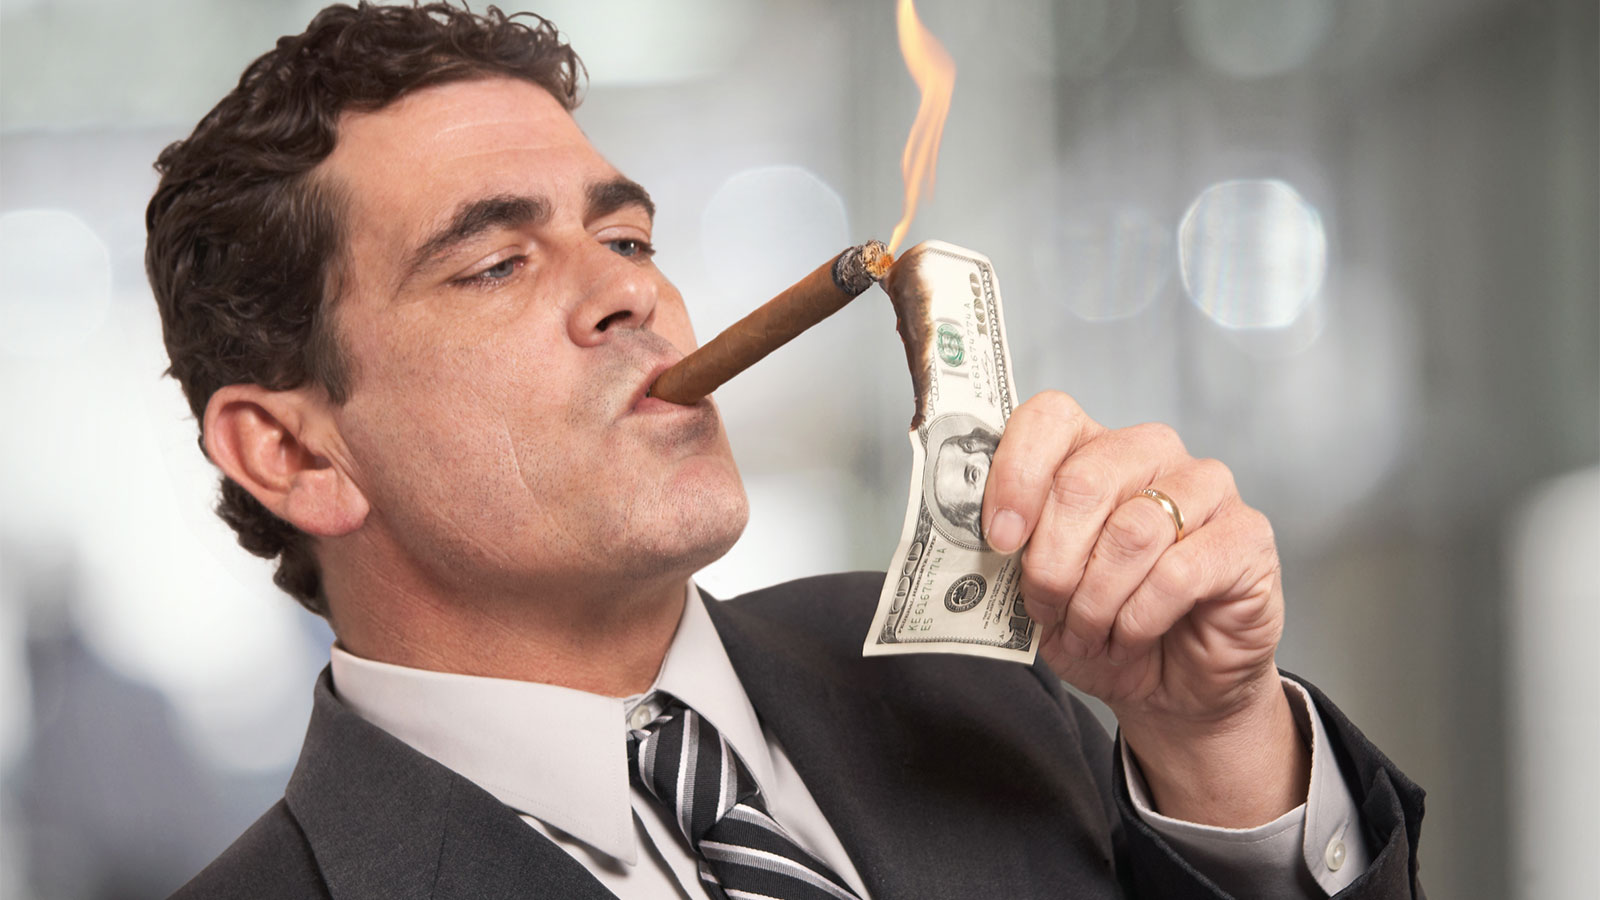 Man lighting cigar with $100 bill